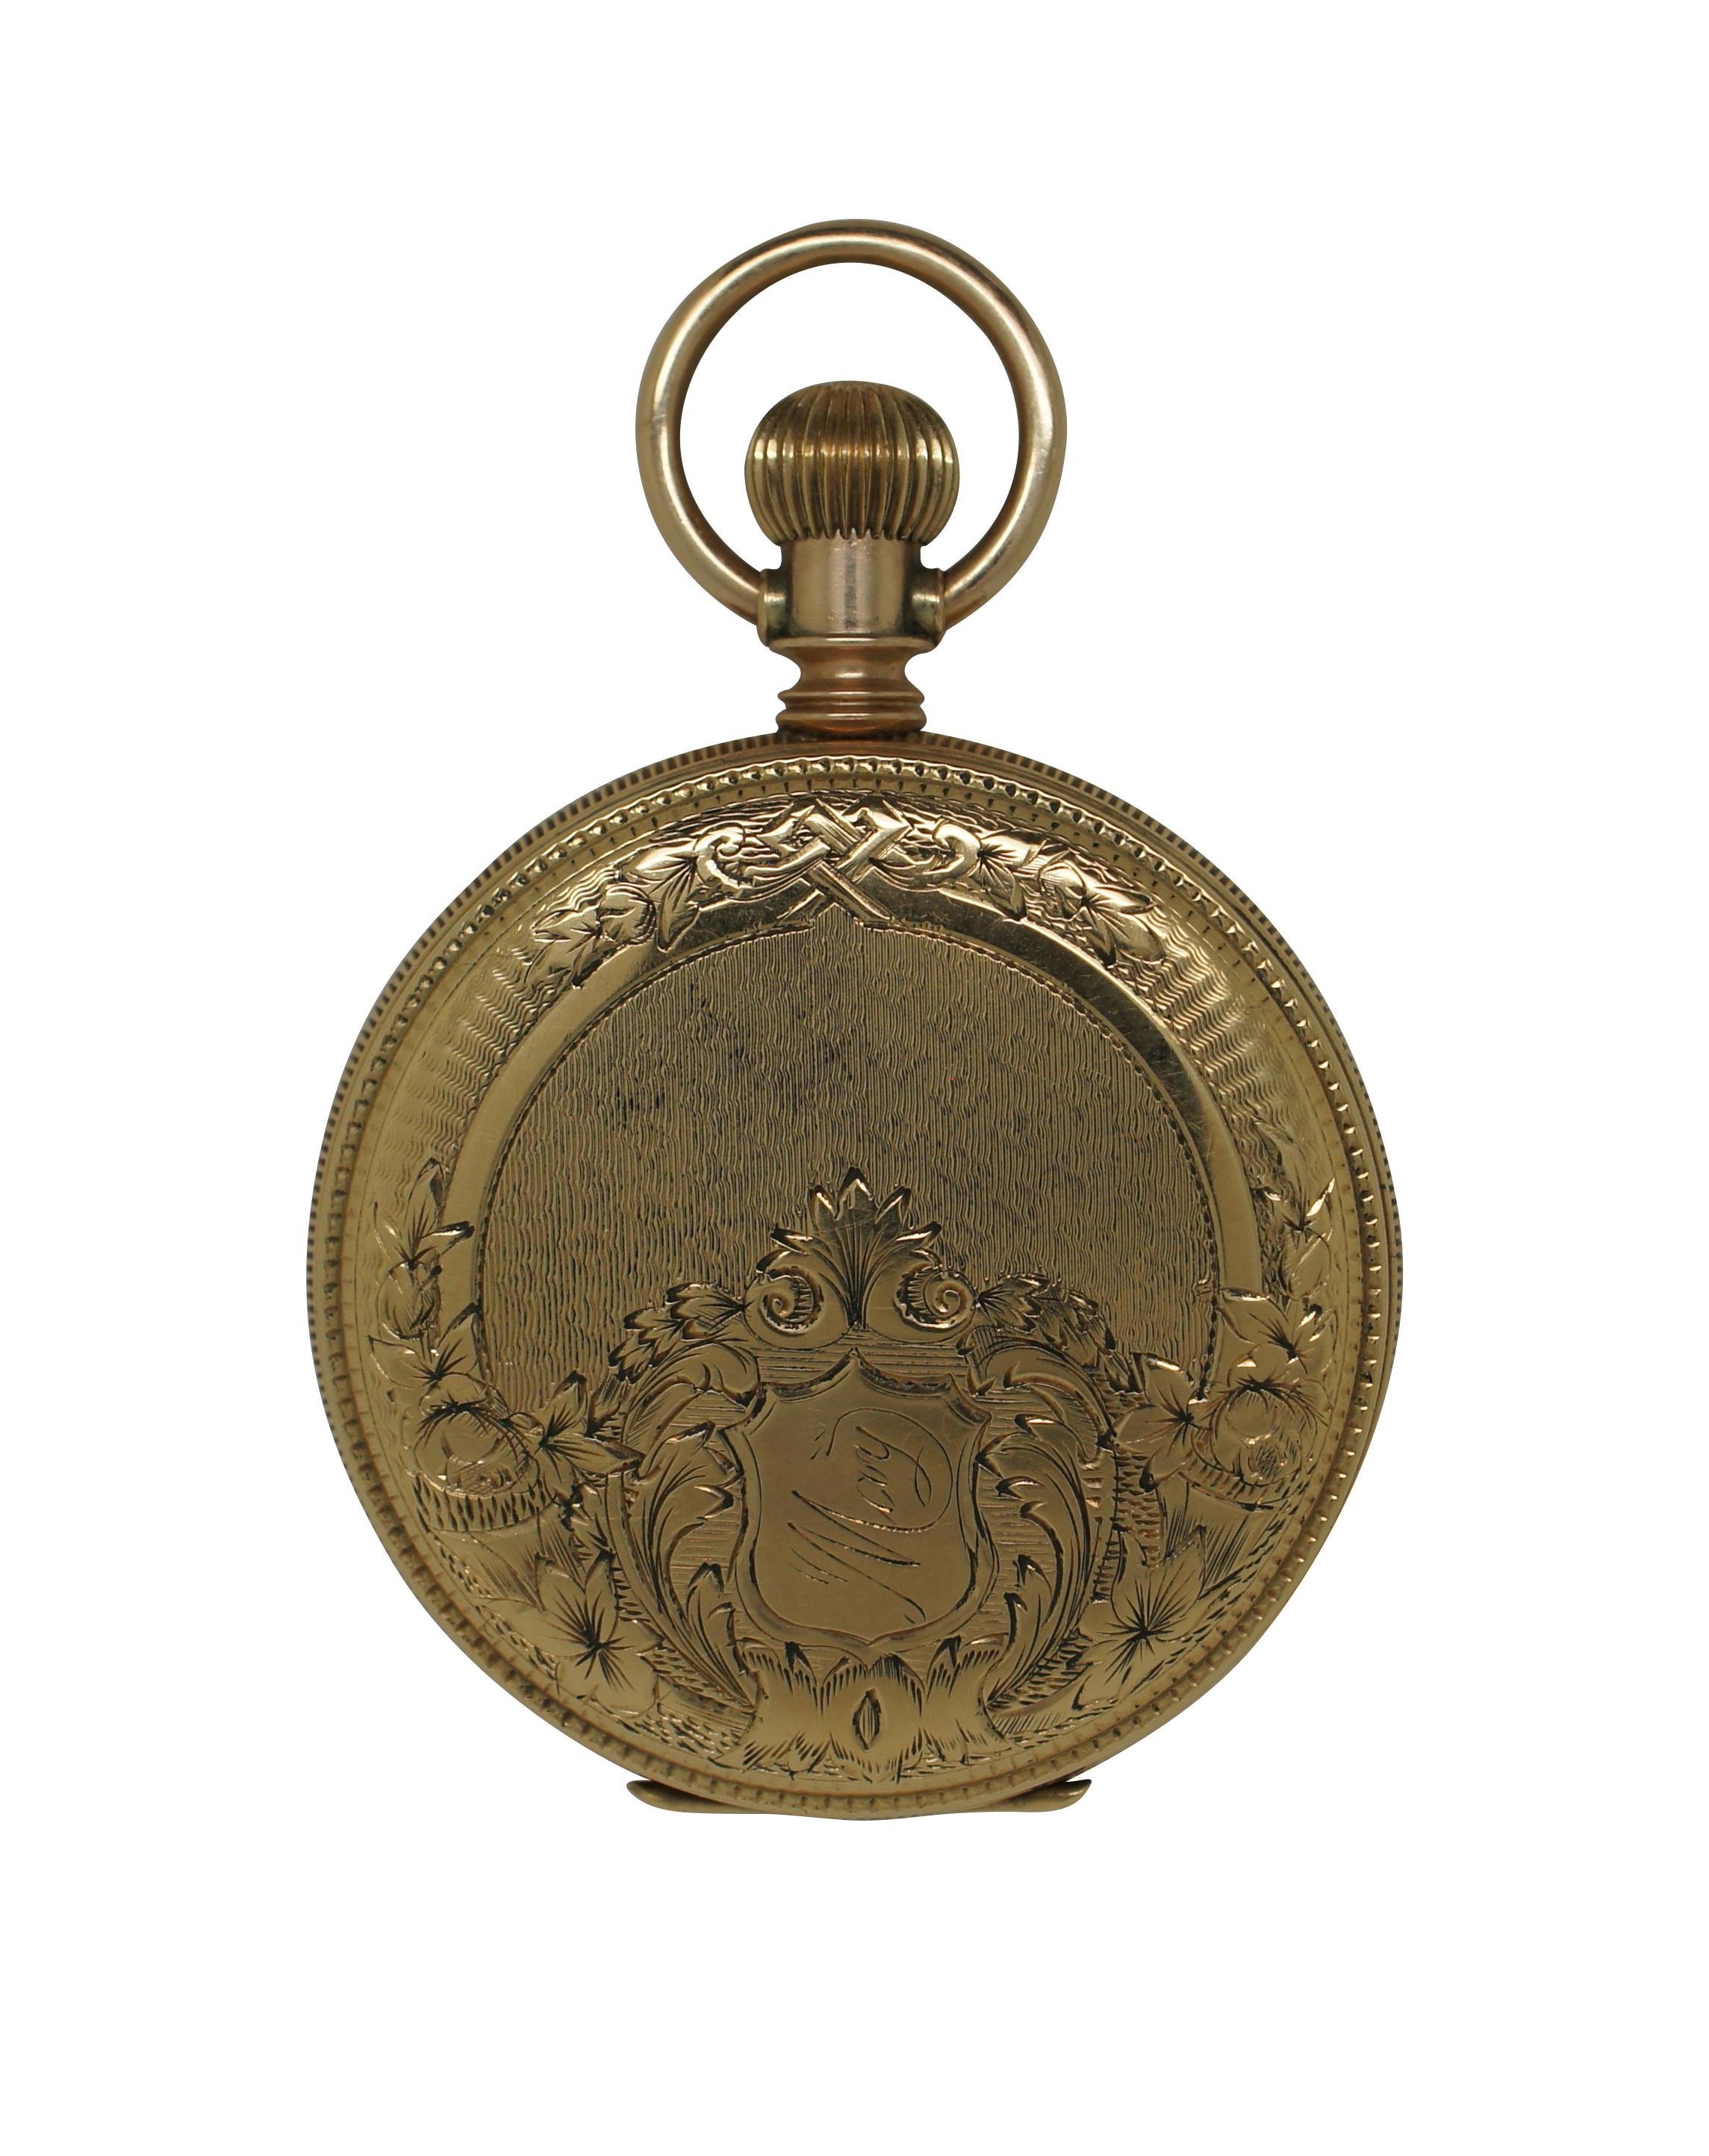 Antike Taschenuhr aus den späten 1880er Jahren von Elgin National Watch Company. Zifferblatt aus weißem Porzellan mit schwarzen römischen Ziffern; zweites Hilfszifferblatt mit arabischen Ziffern. Das Etui ist auf der einen Seite mit einem